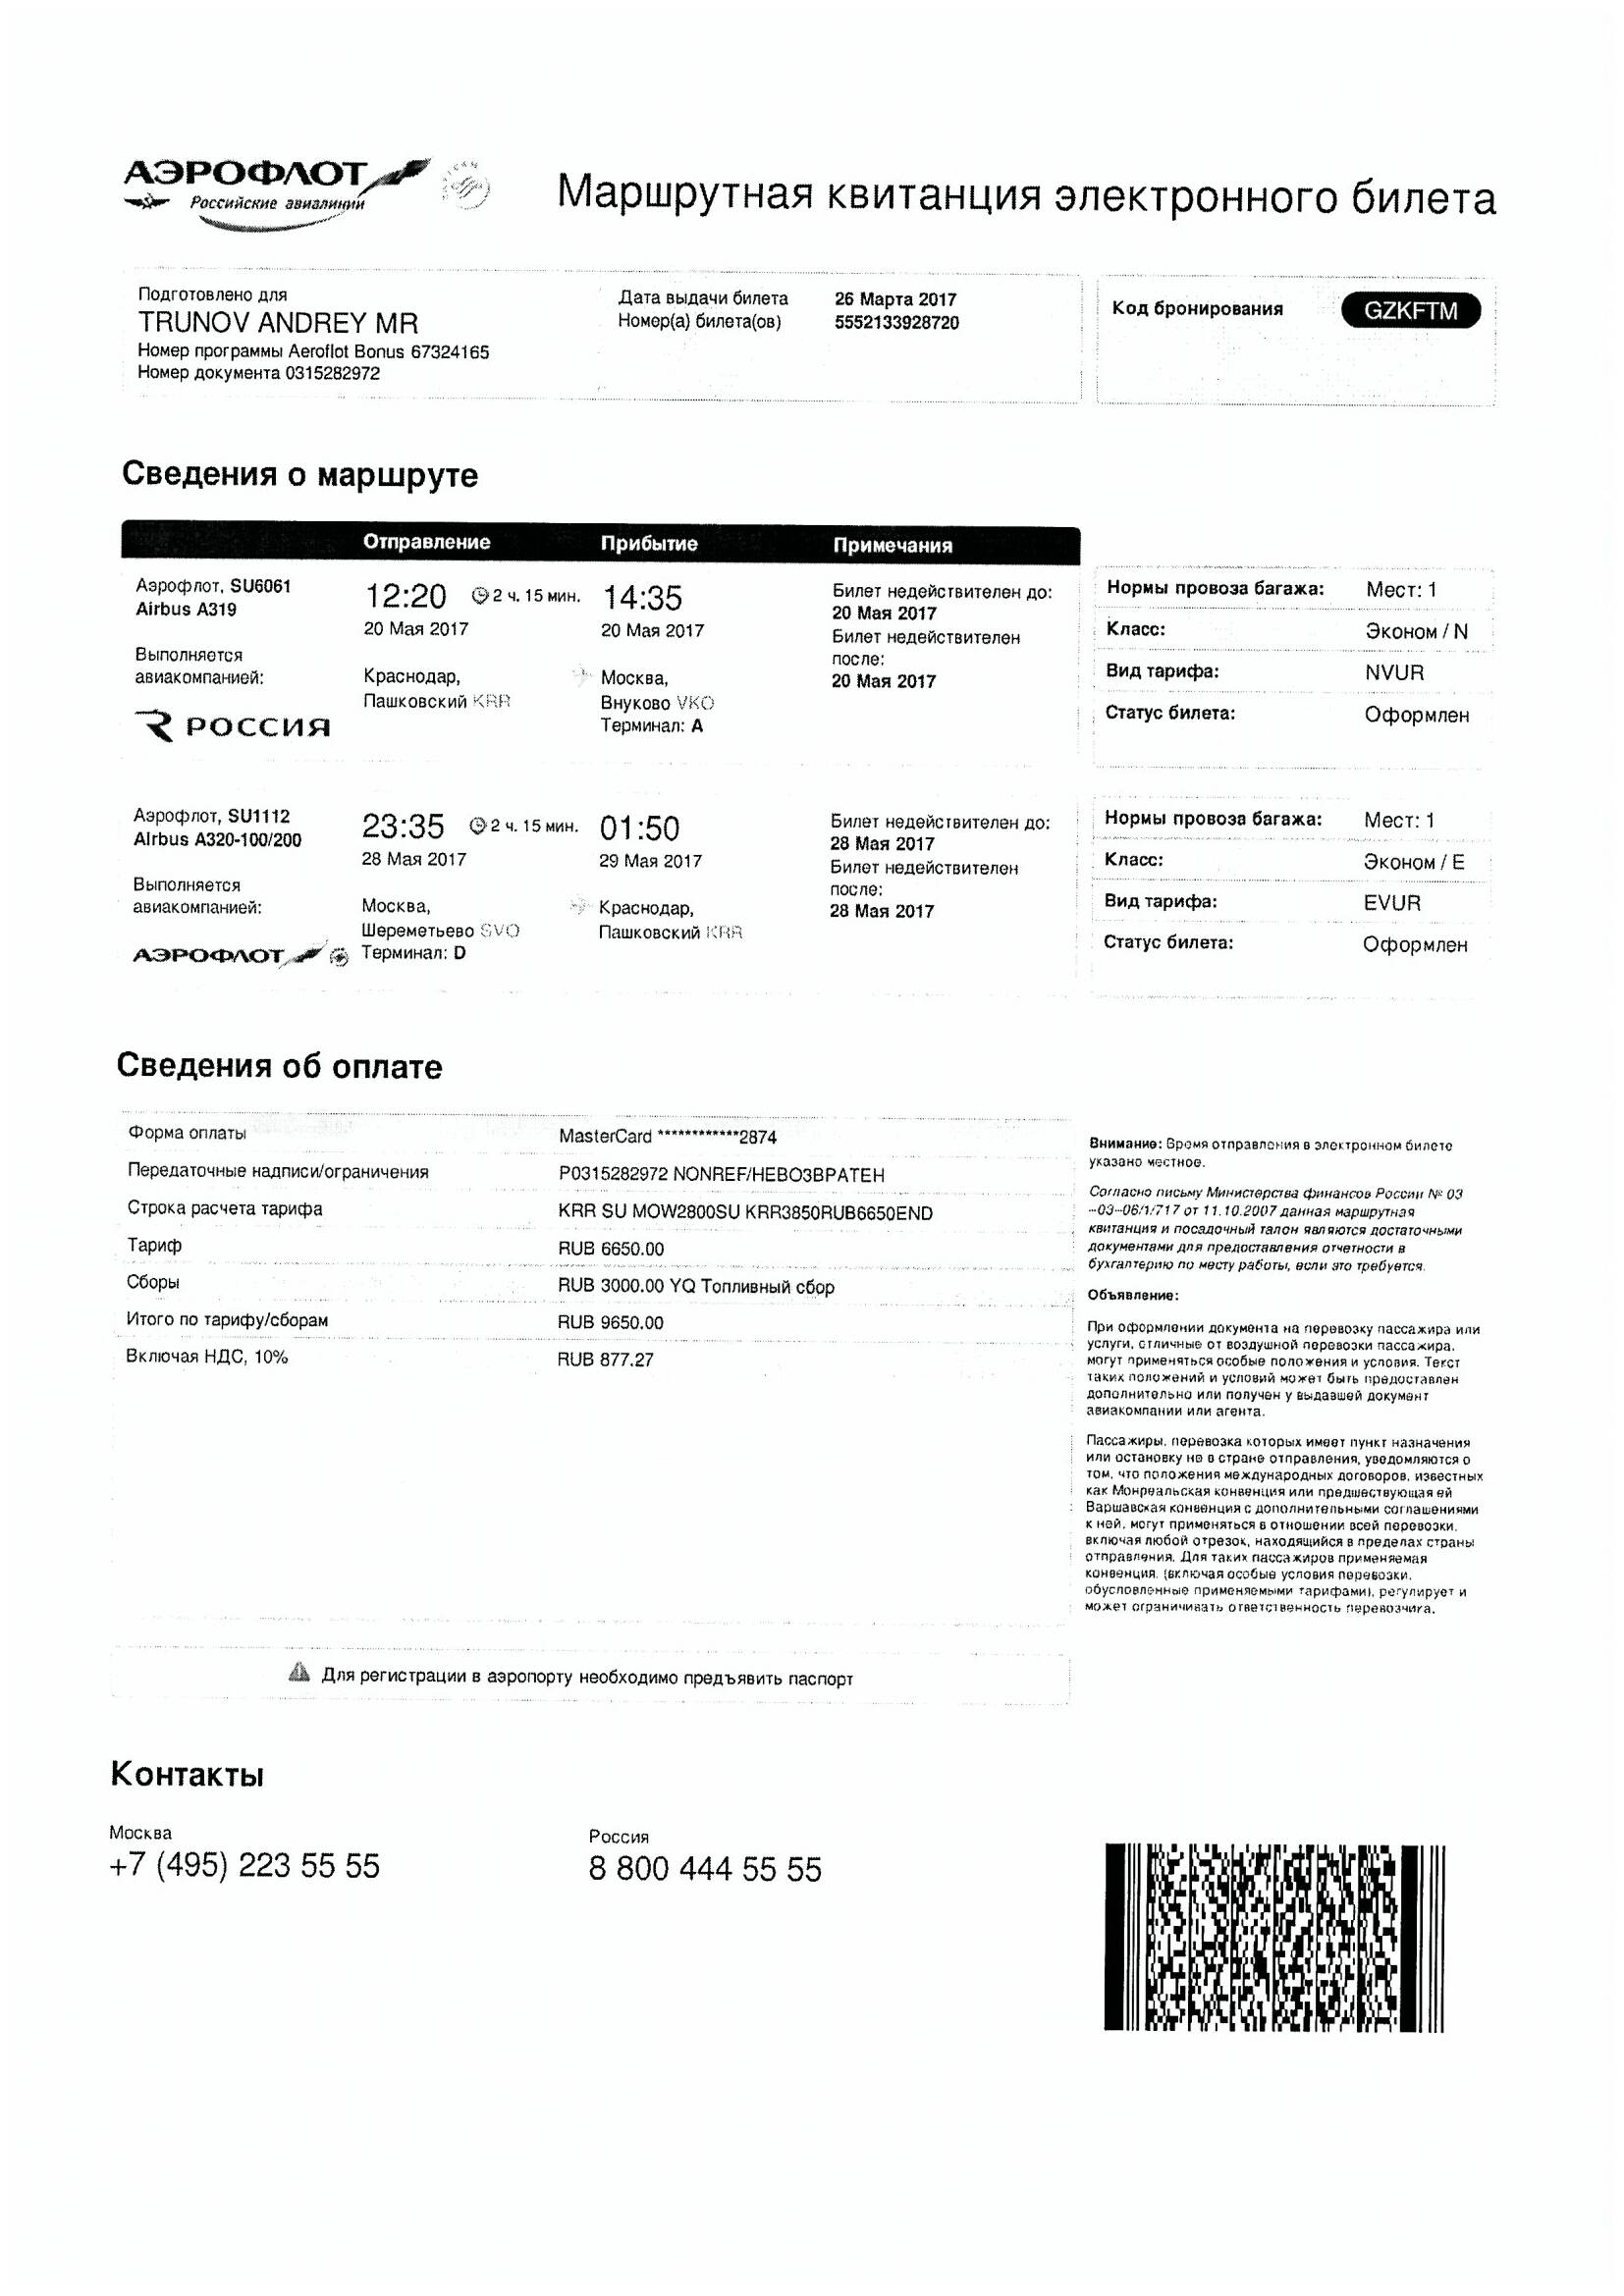 Билет Андрея Трунова на поездку в Центр БФМ Надежды Лоскутовой в Москву 20-28 мая 2017 года